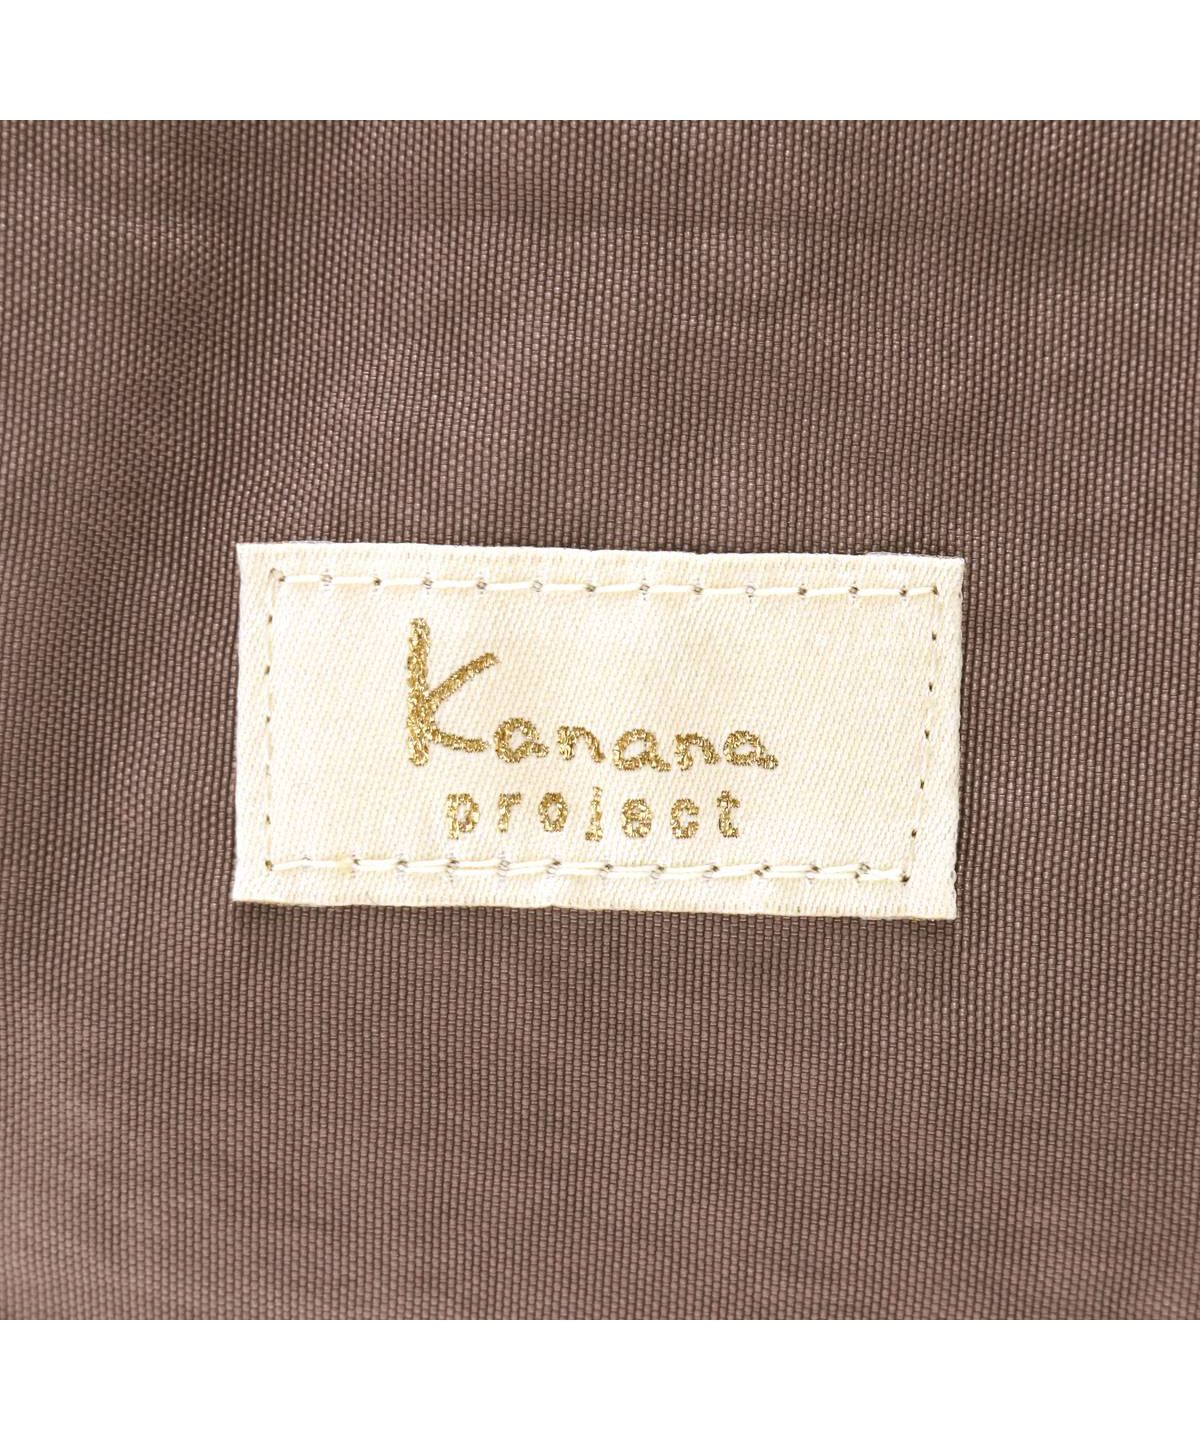 カナナプロジェクト コレクション リュック Kanana project COLLECTION 